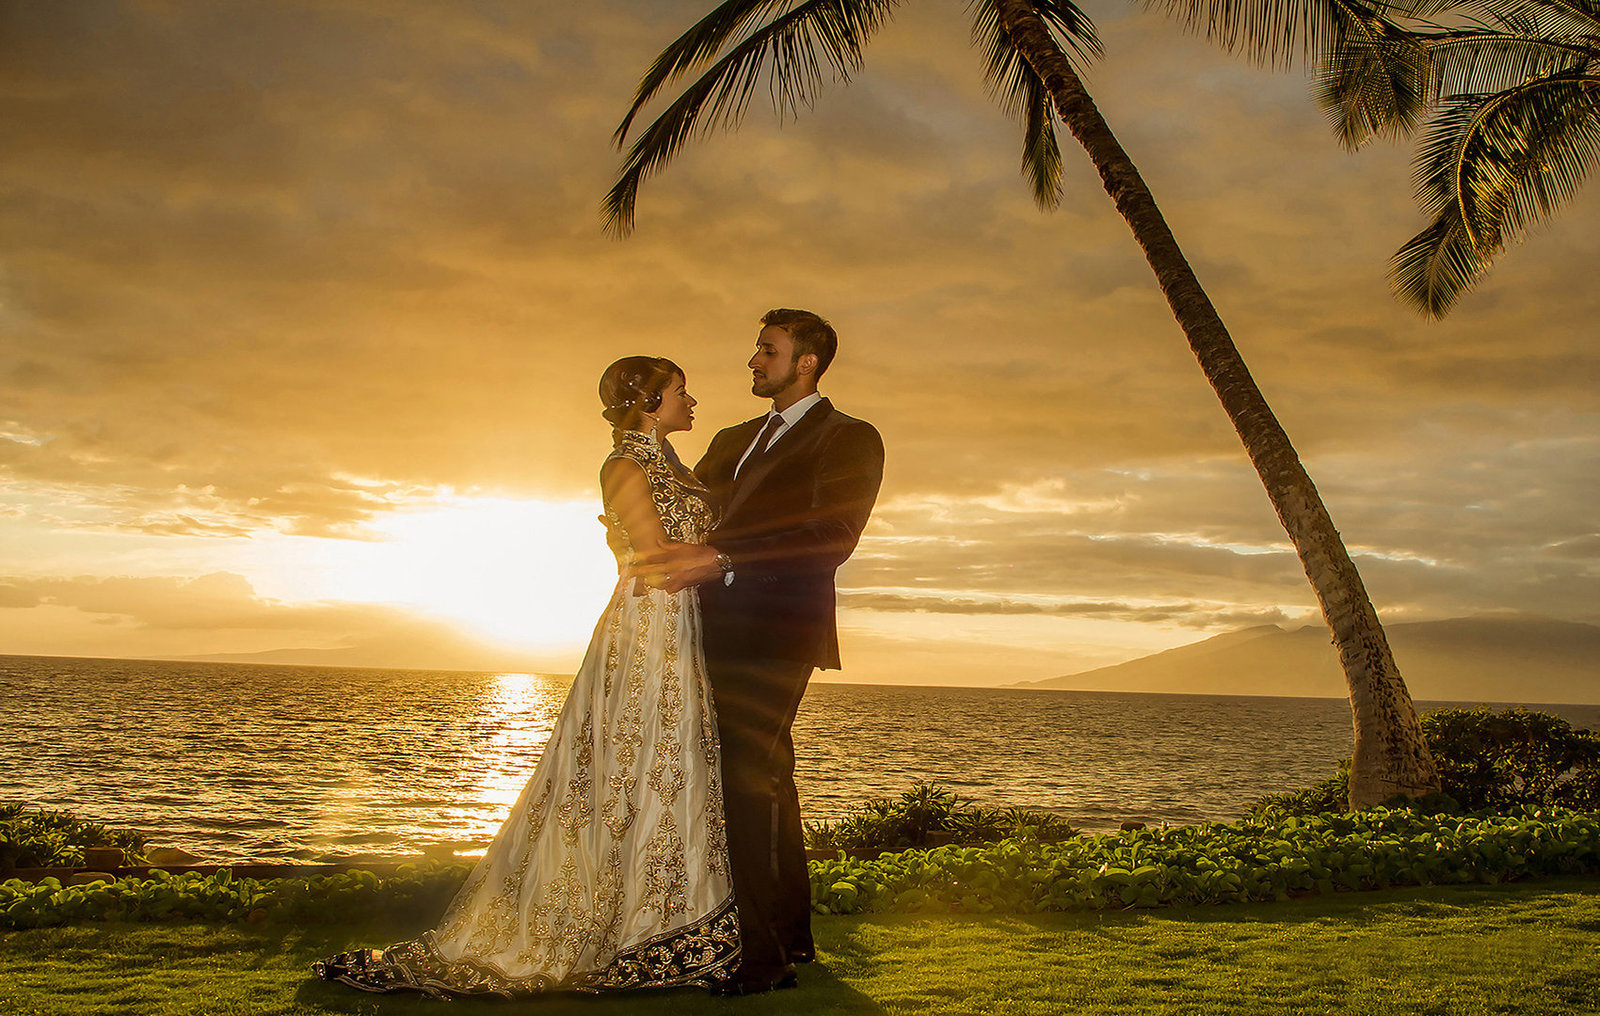 Engagement photographers on Kauai